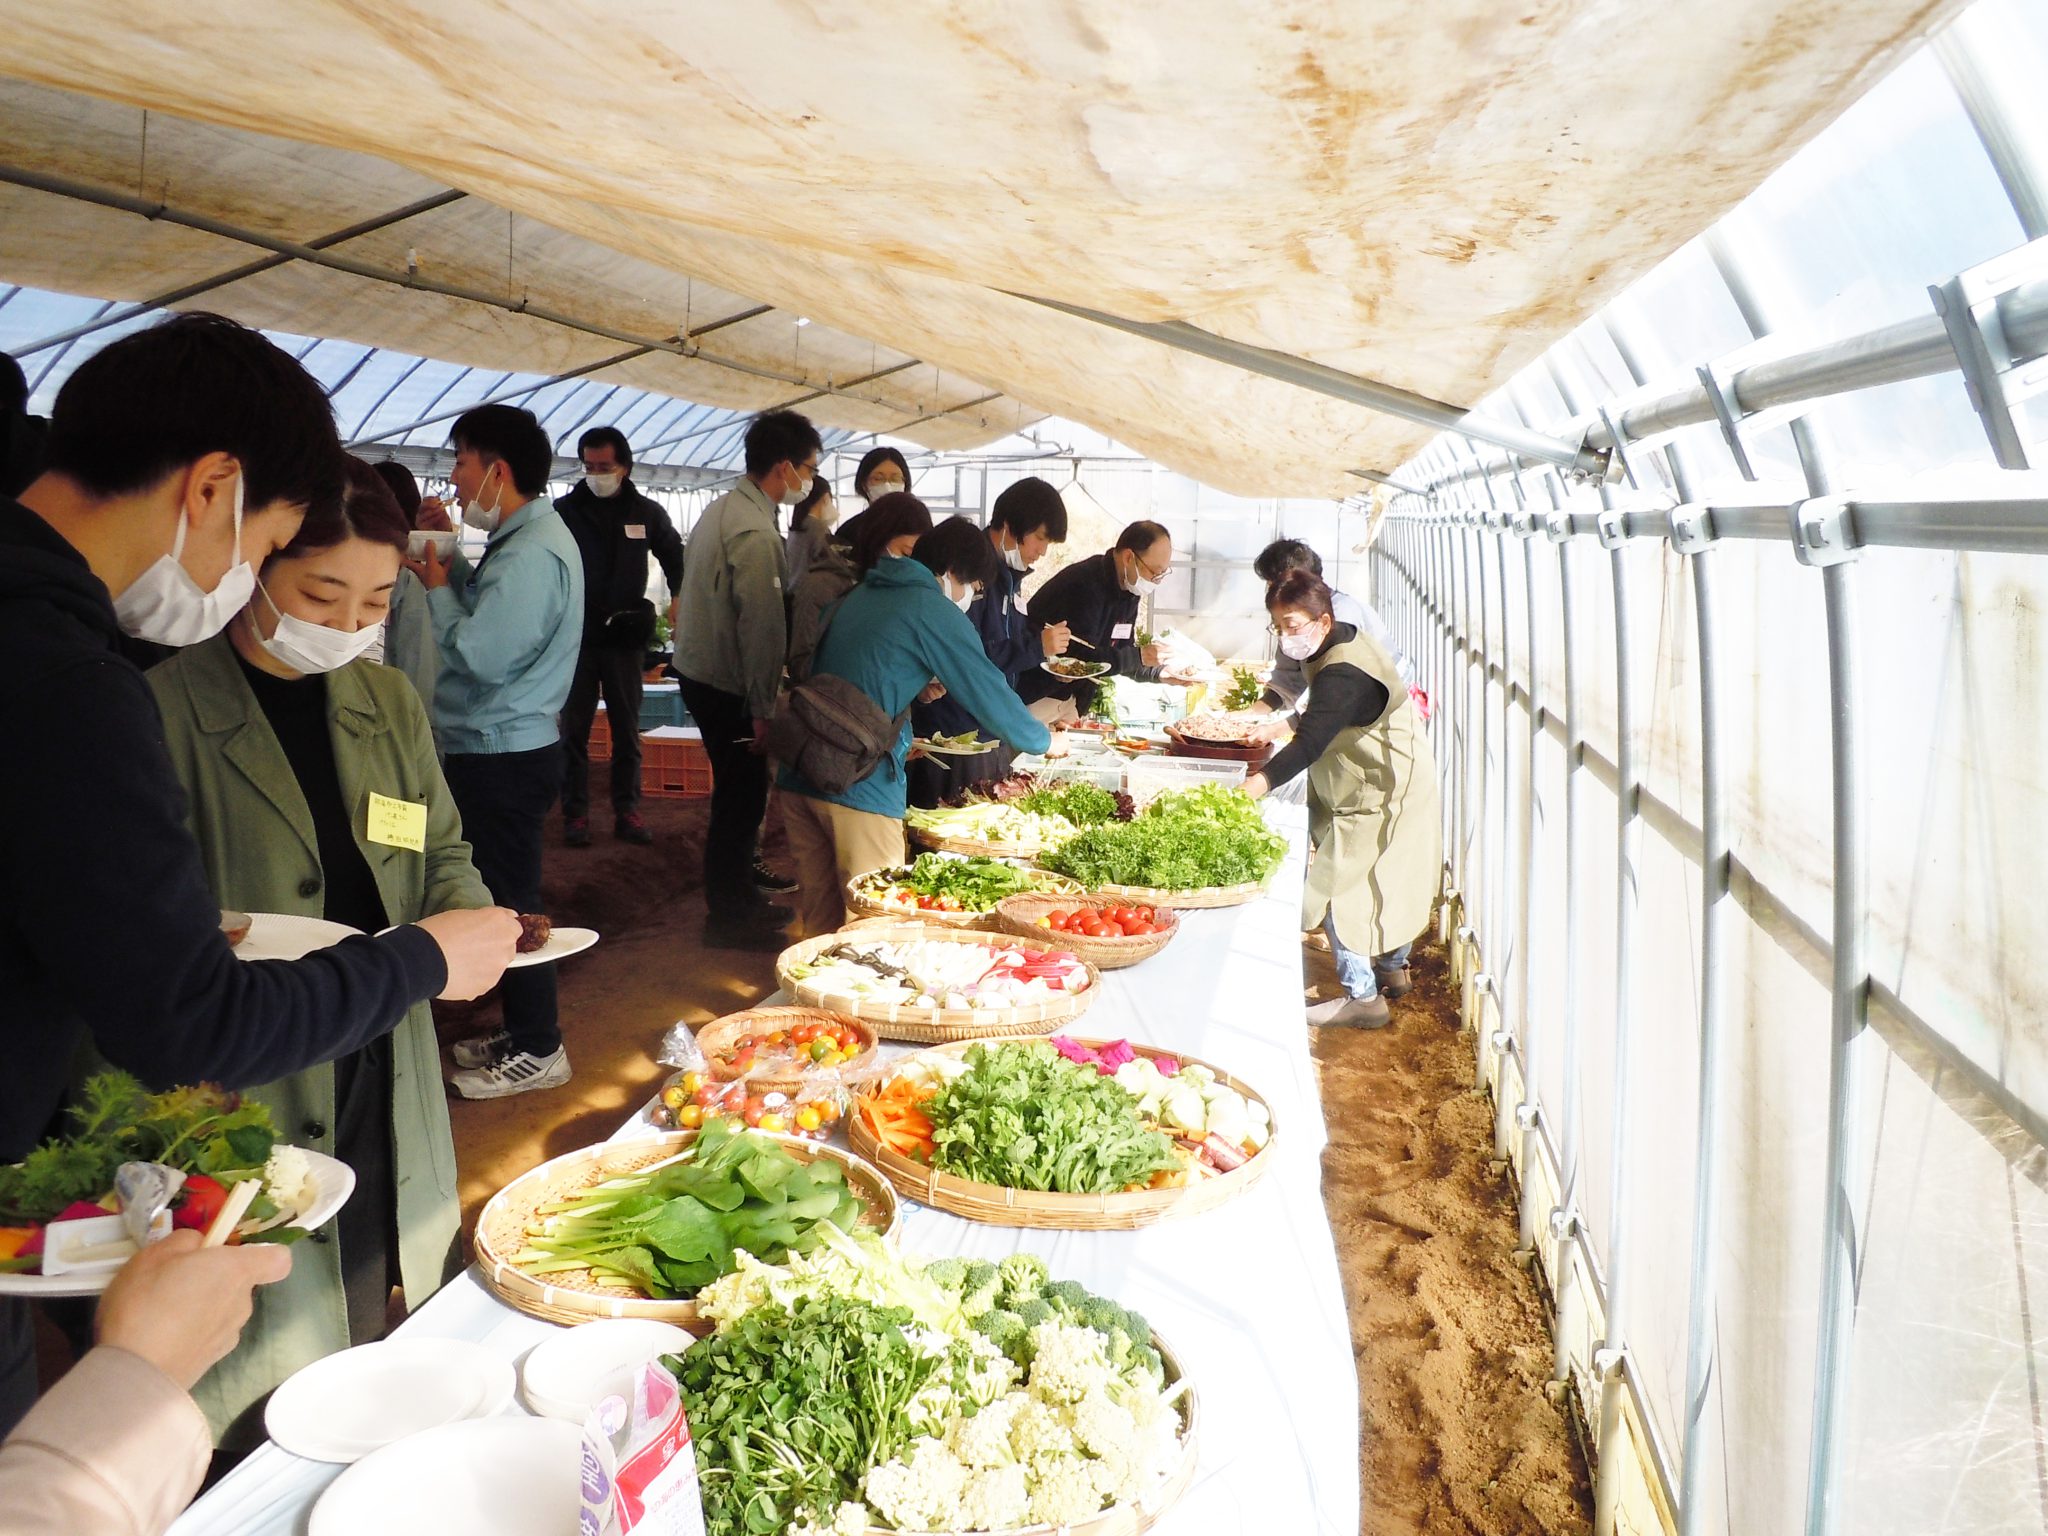 野菜のおいしさ伝えたい　年2回農園開放、生産者と消費者の懸け橋に　杉本正博さん・三島市